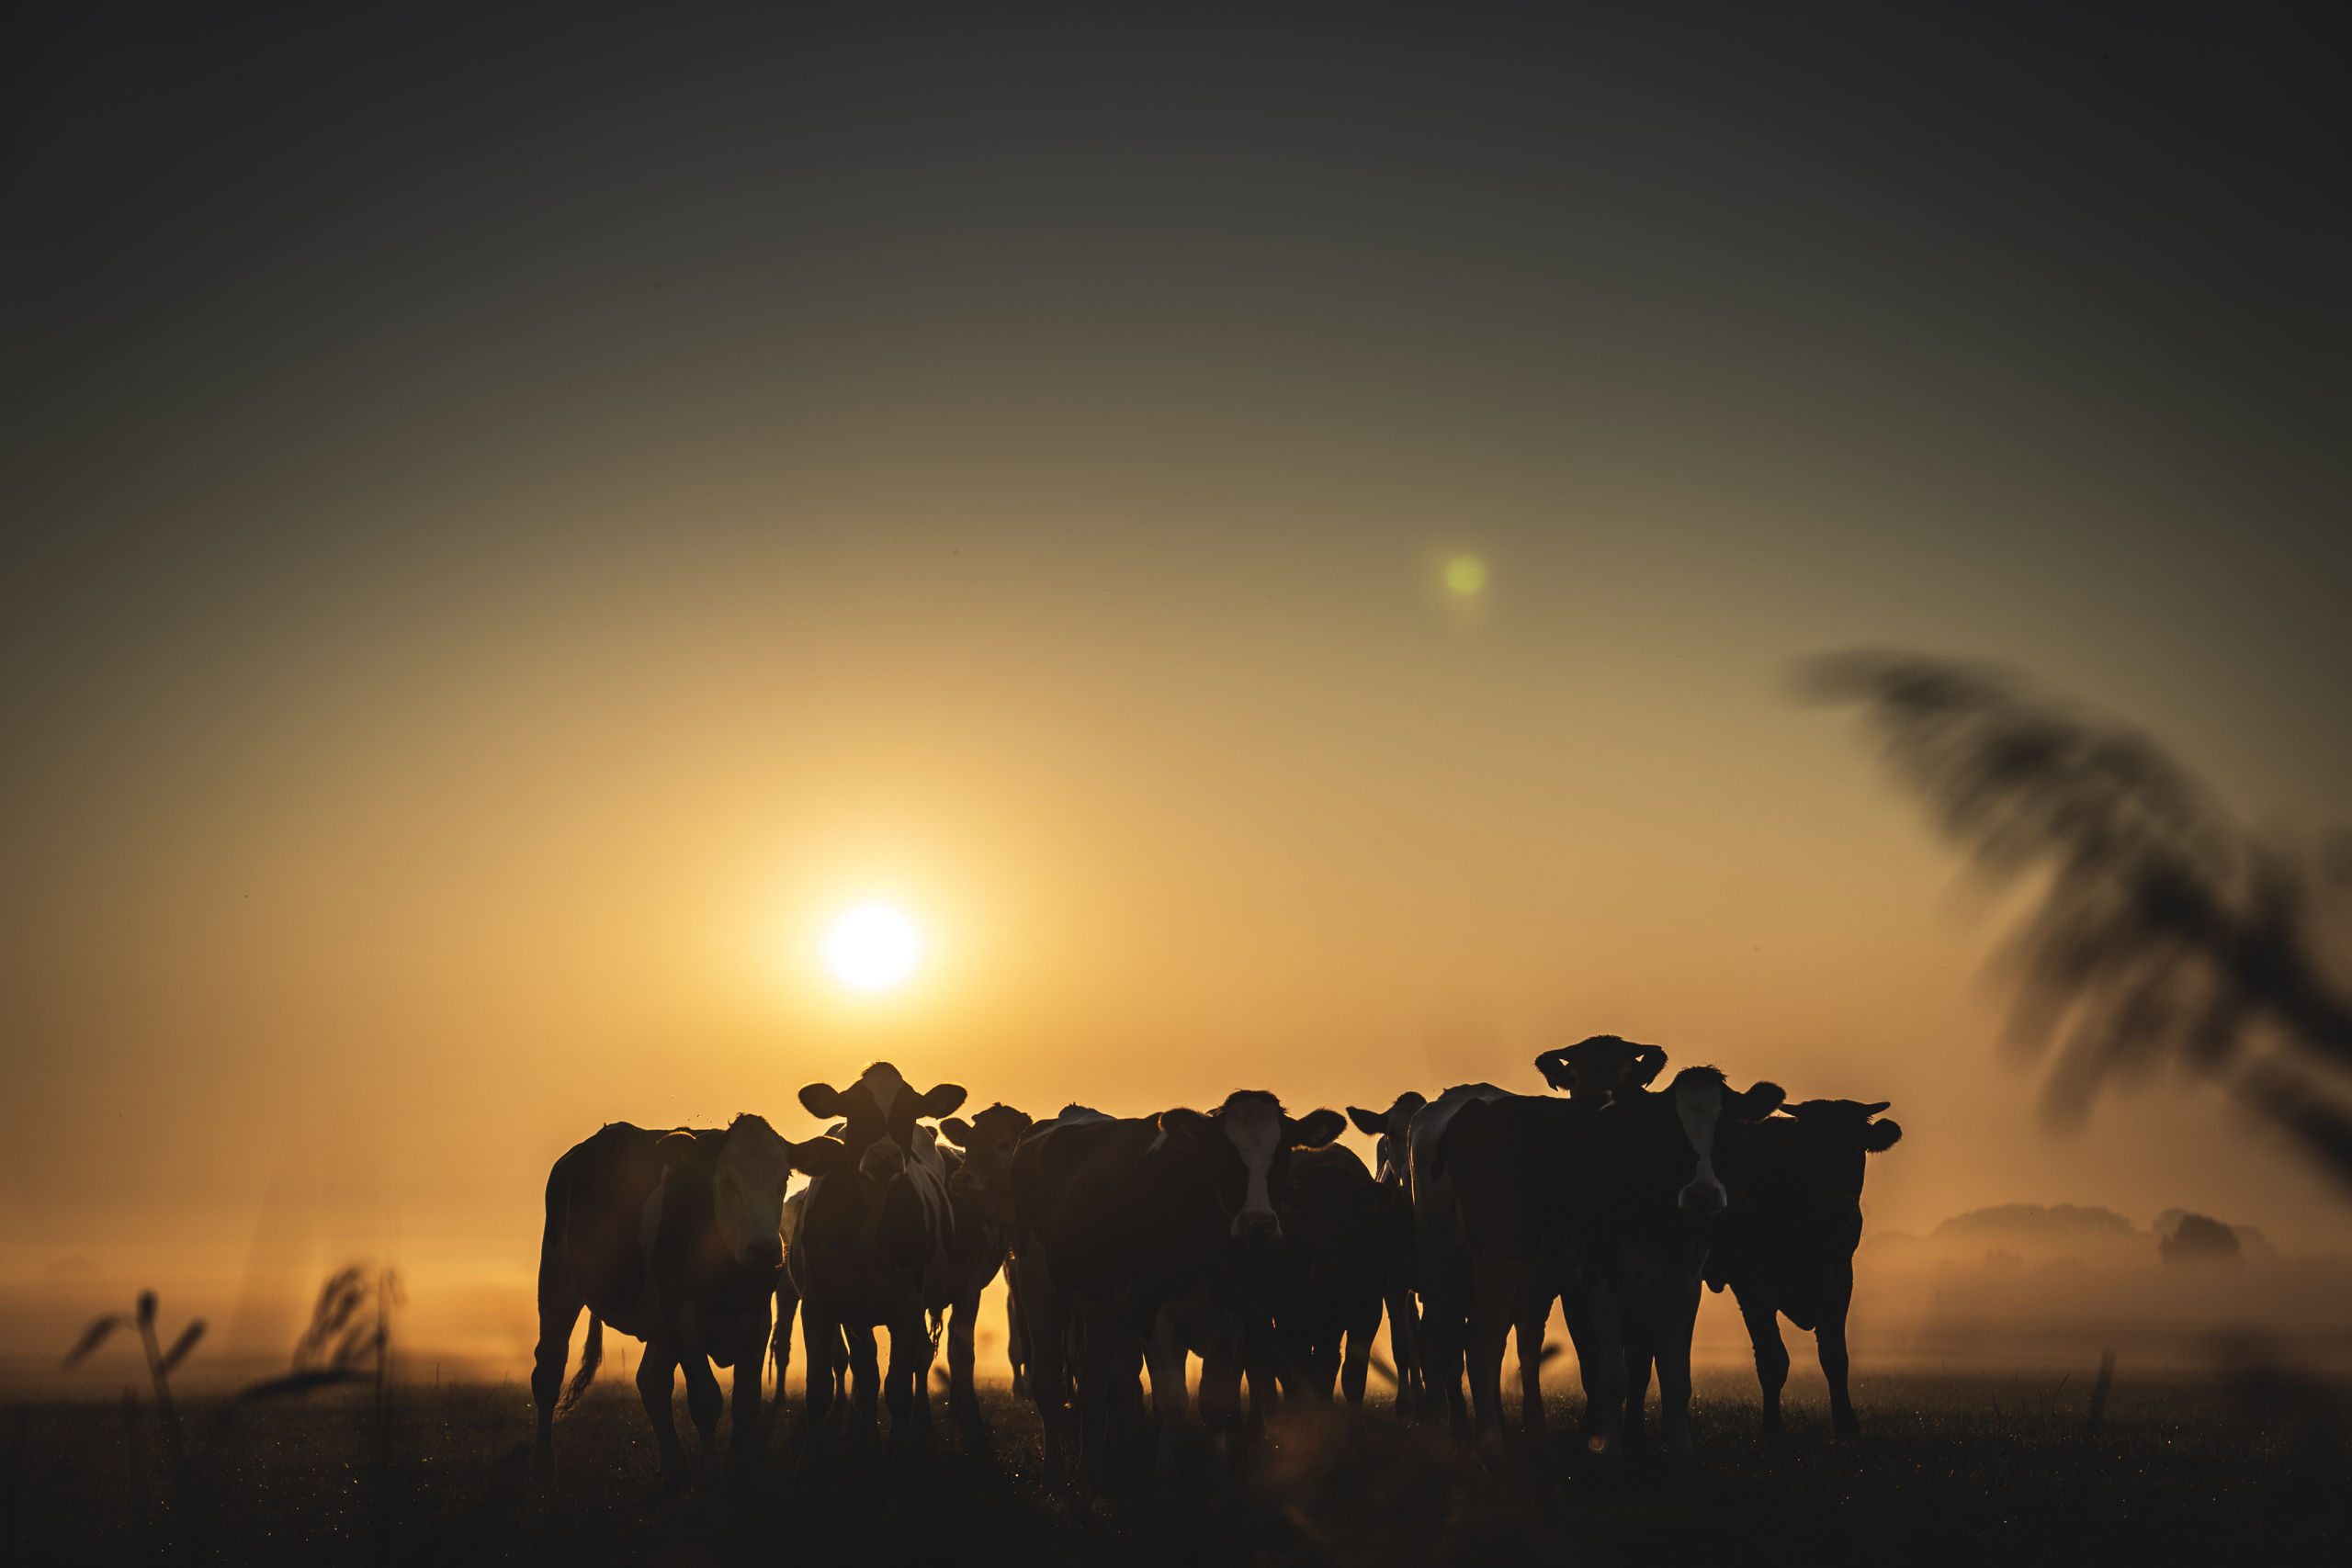 Koeien in Groningen zien de eiwit-beperking met lede ogen tegemoet